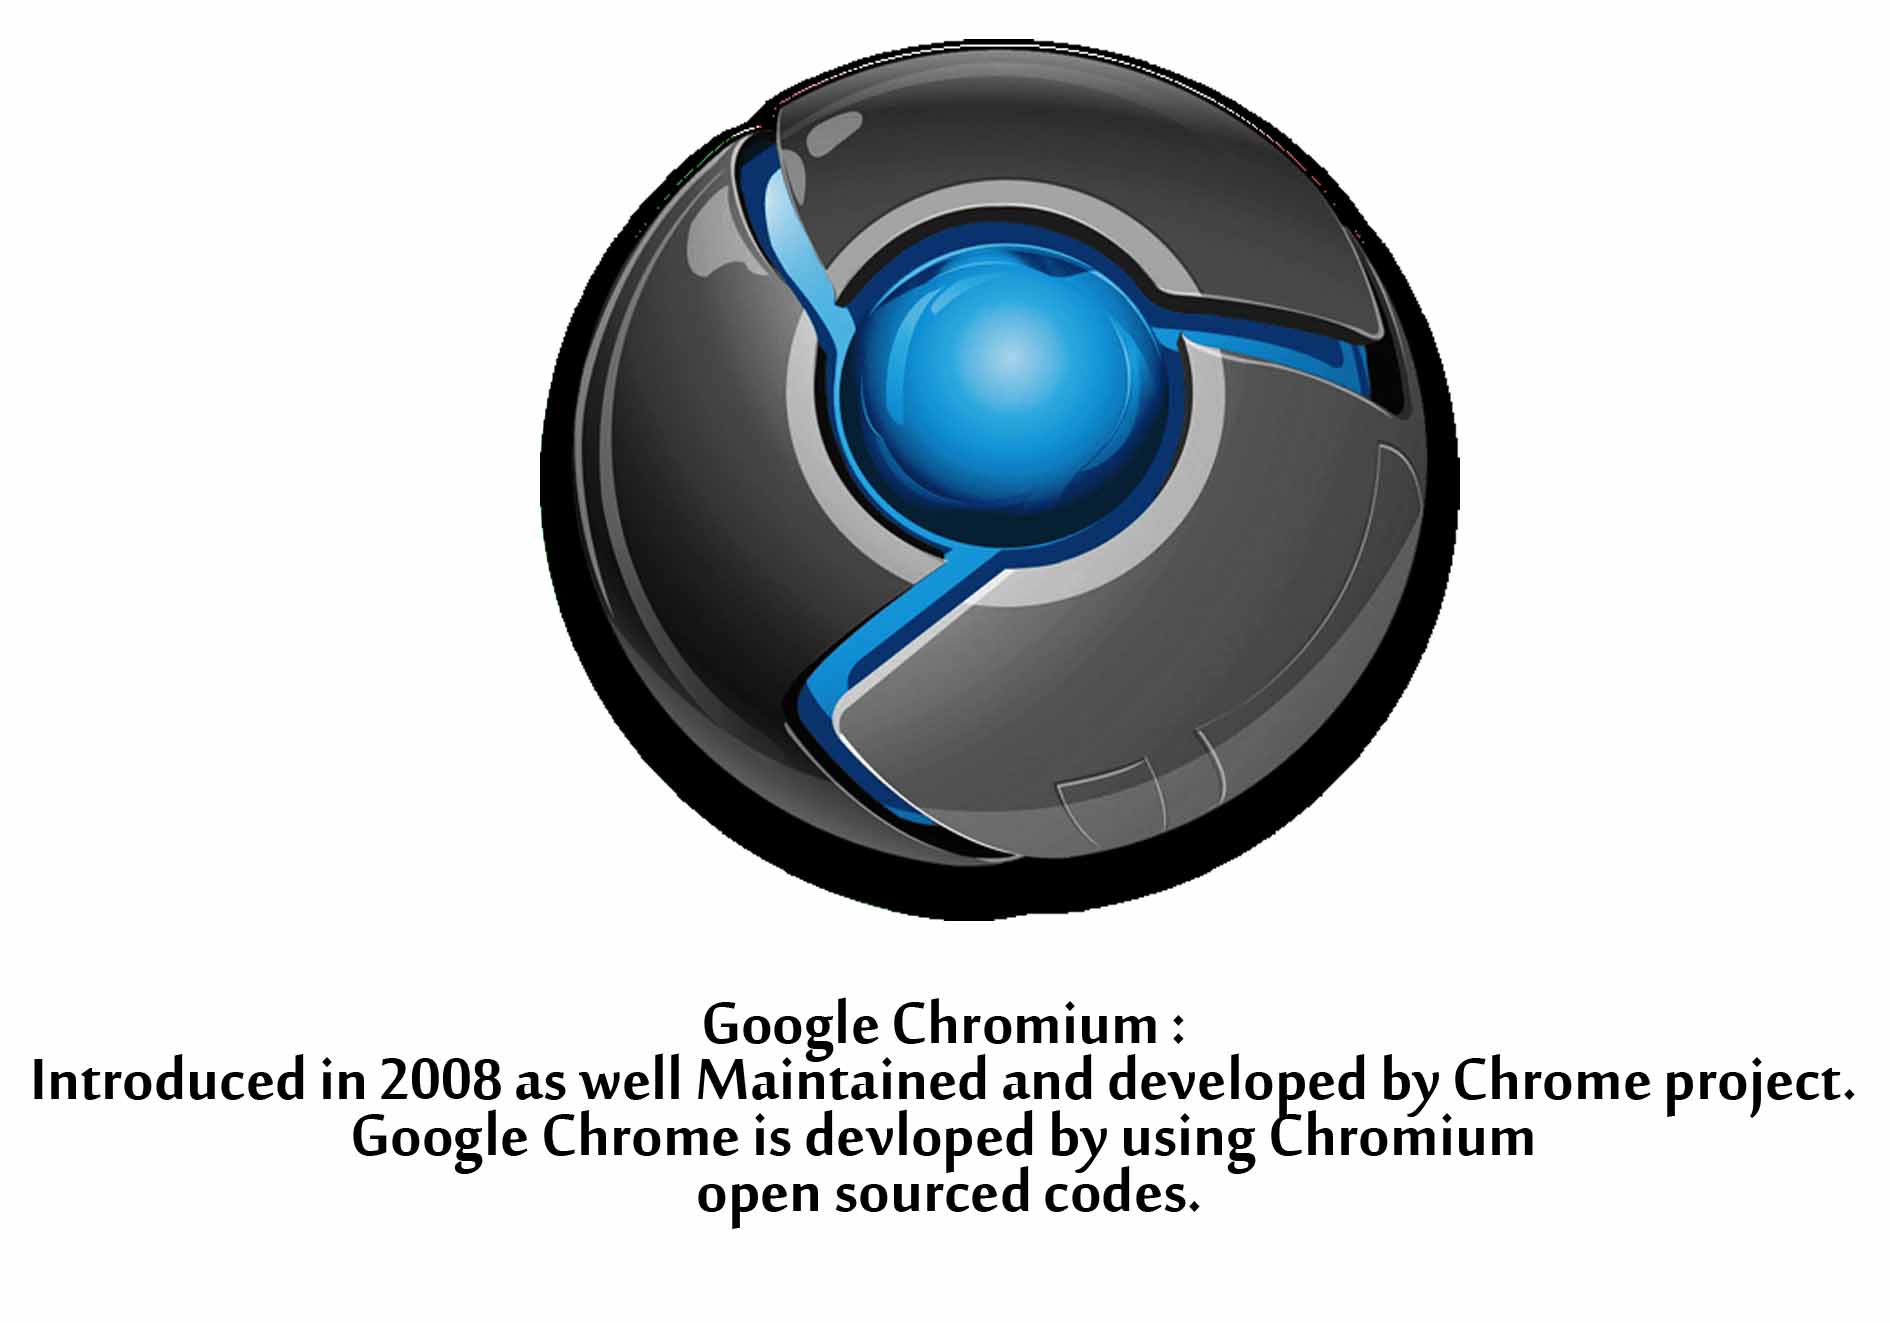 chromium vs chrome